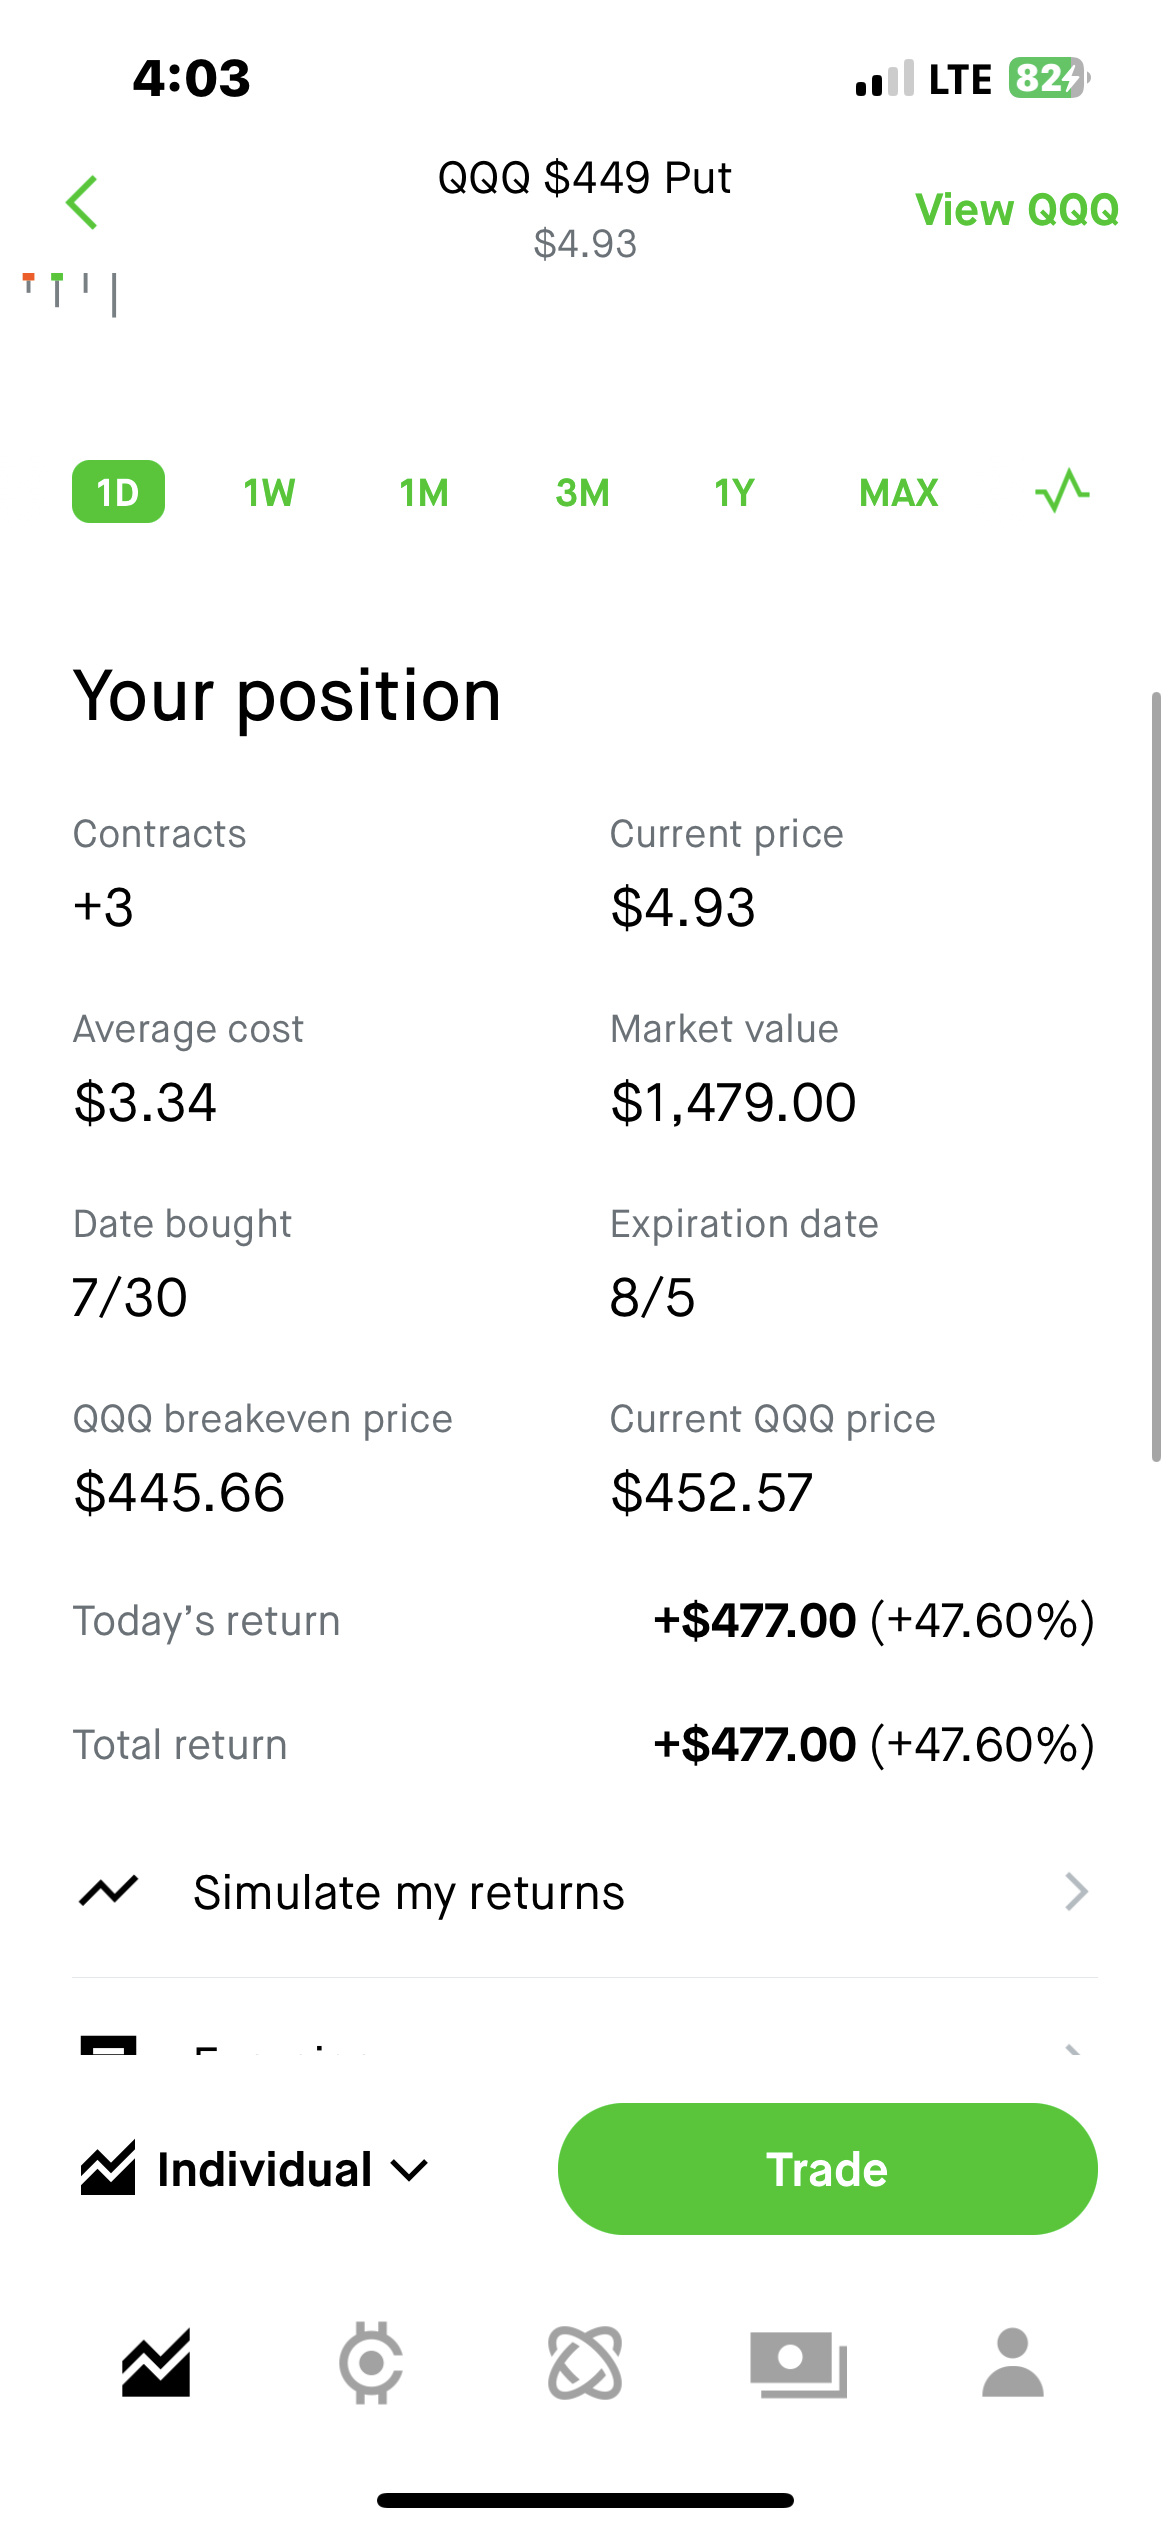 $纳指100ETF-Invesco QQQ Trust (QQQ.US)$ 在 moomoo 中只有最低的交易量，回来交易好哈哈哈哈哈哈 🥴😂。但是今天又是一个不错的坏蛋。昨天 1万，在 0td 从 .16 到 2.36 的击杀之后，在 2 笔交易中赚了 850 点，150 股从 2,404 美元升至 35,404...